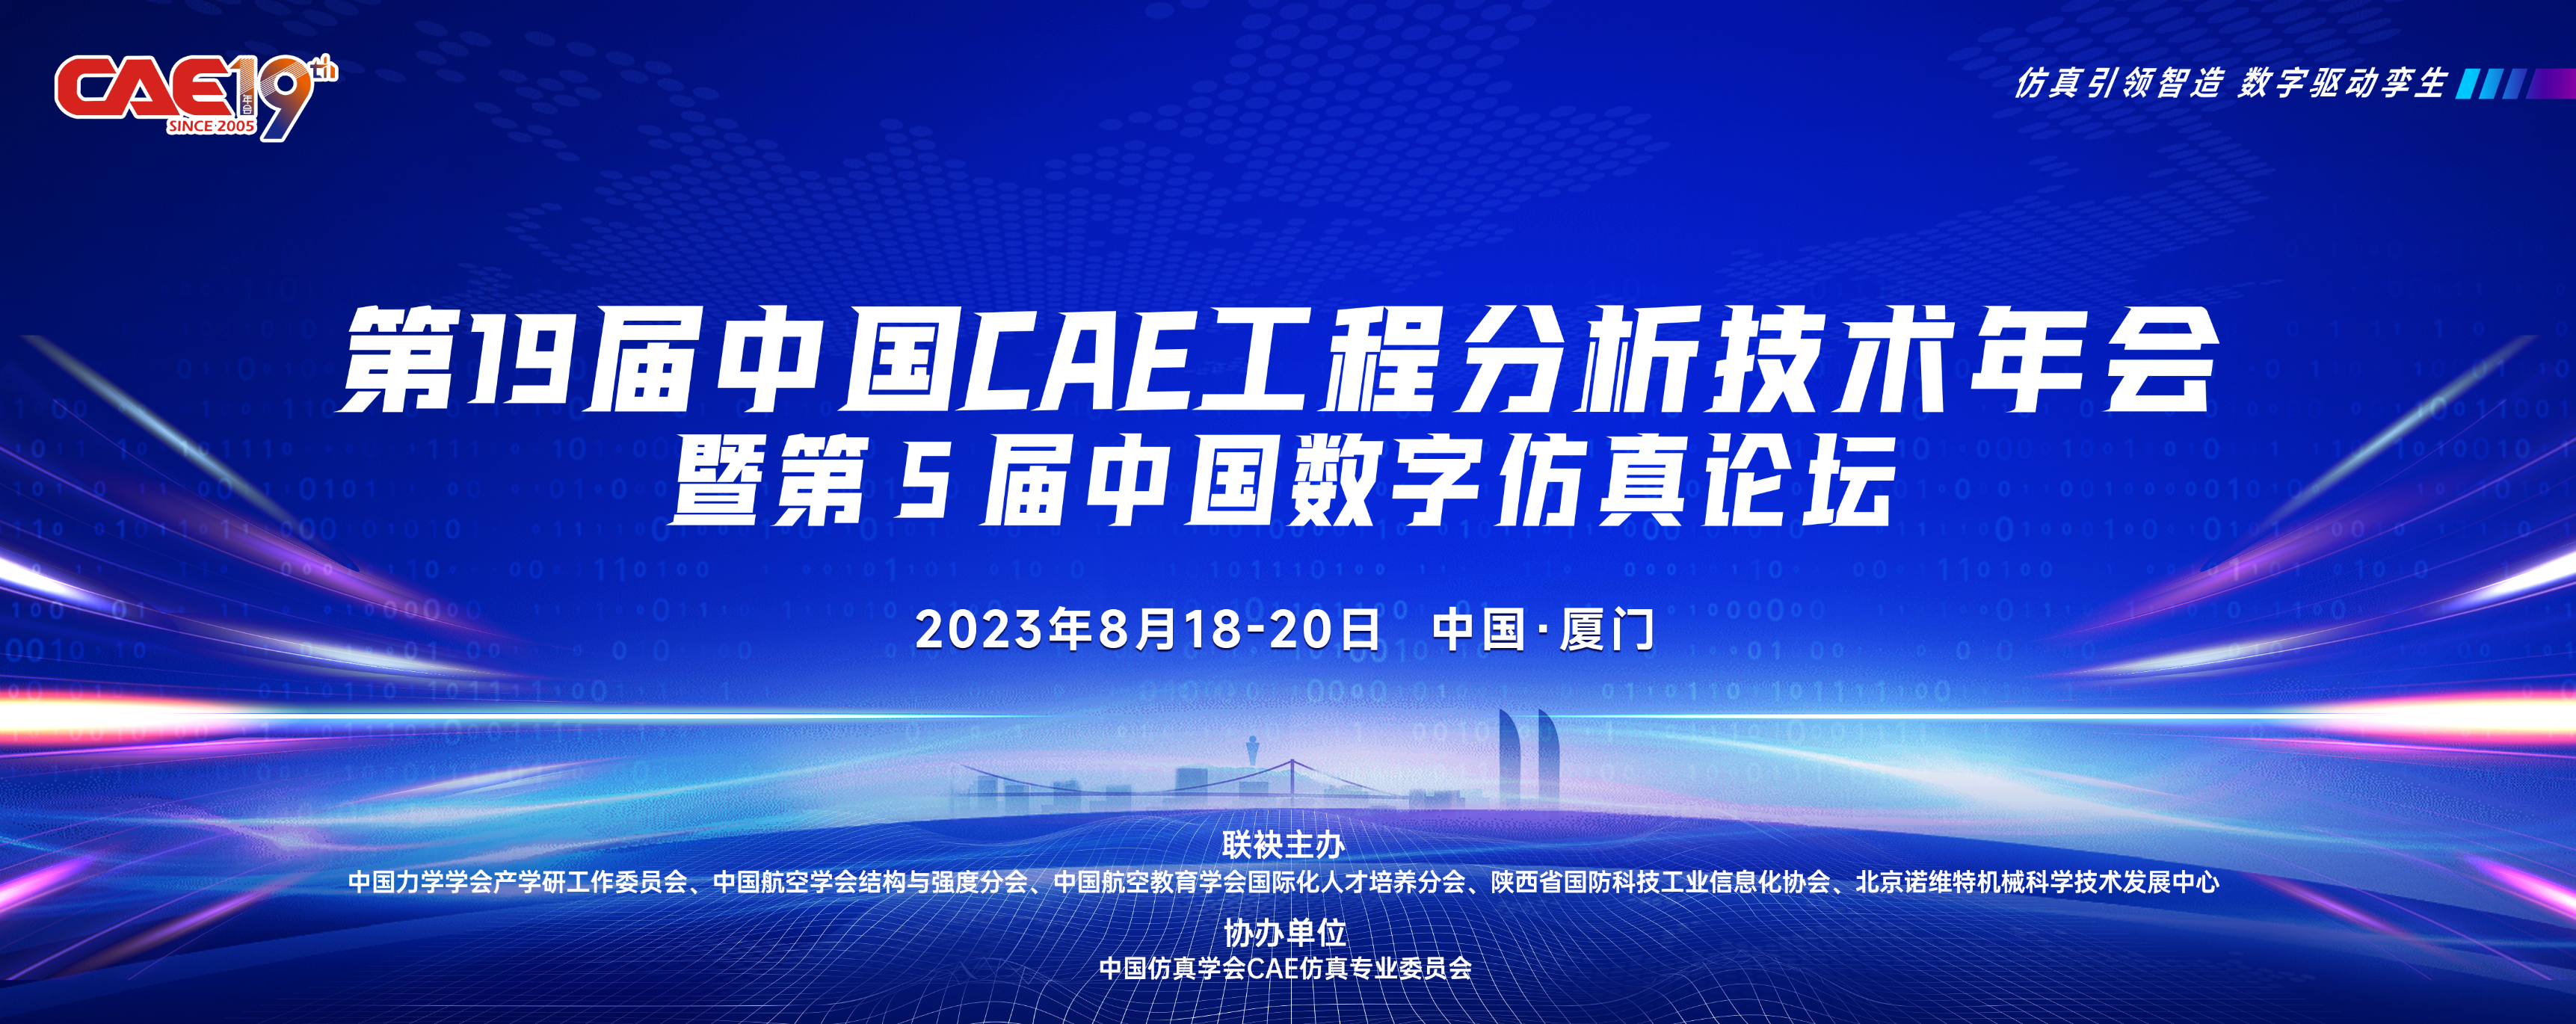 第19届中国CAE年会暨第5届中国数字仿真论坛